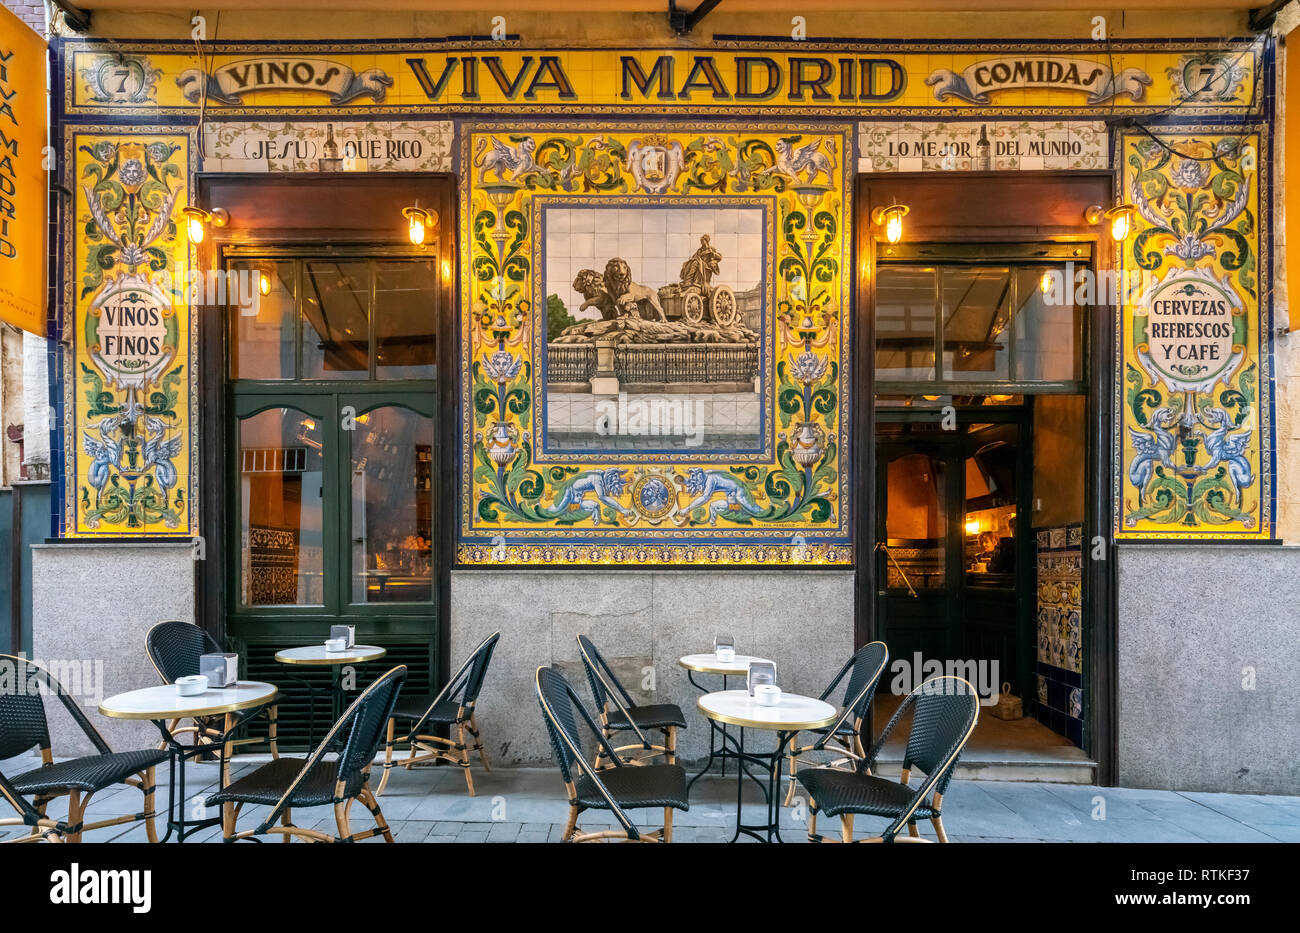 Famoso restaurante Viva Madrid, en el Barrio de Las Letras o barrio literario. Se remonta a 1856, es también un bar de cócteles y tapas. Madrid, España. Foto de stock